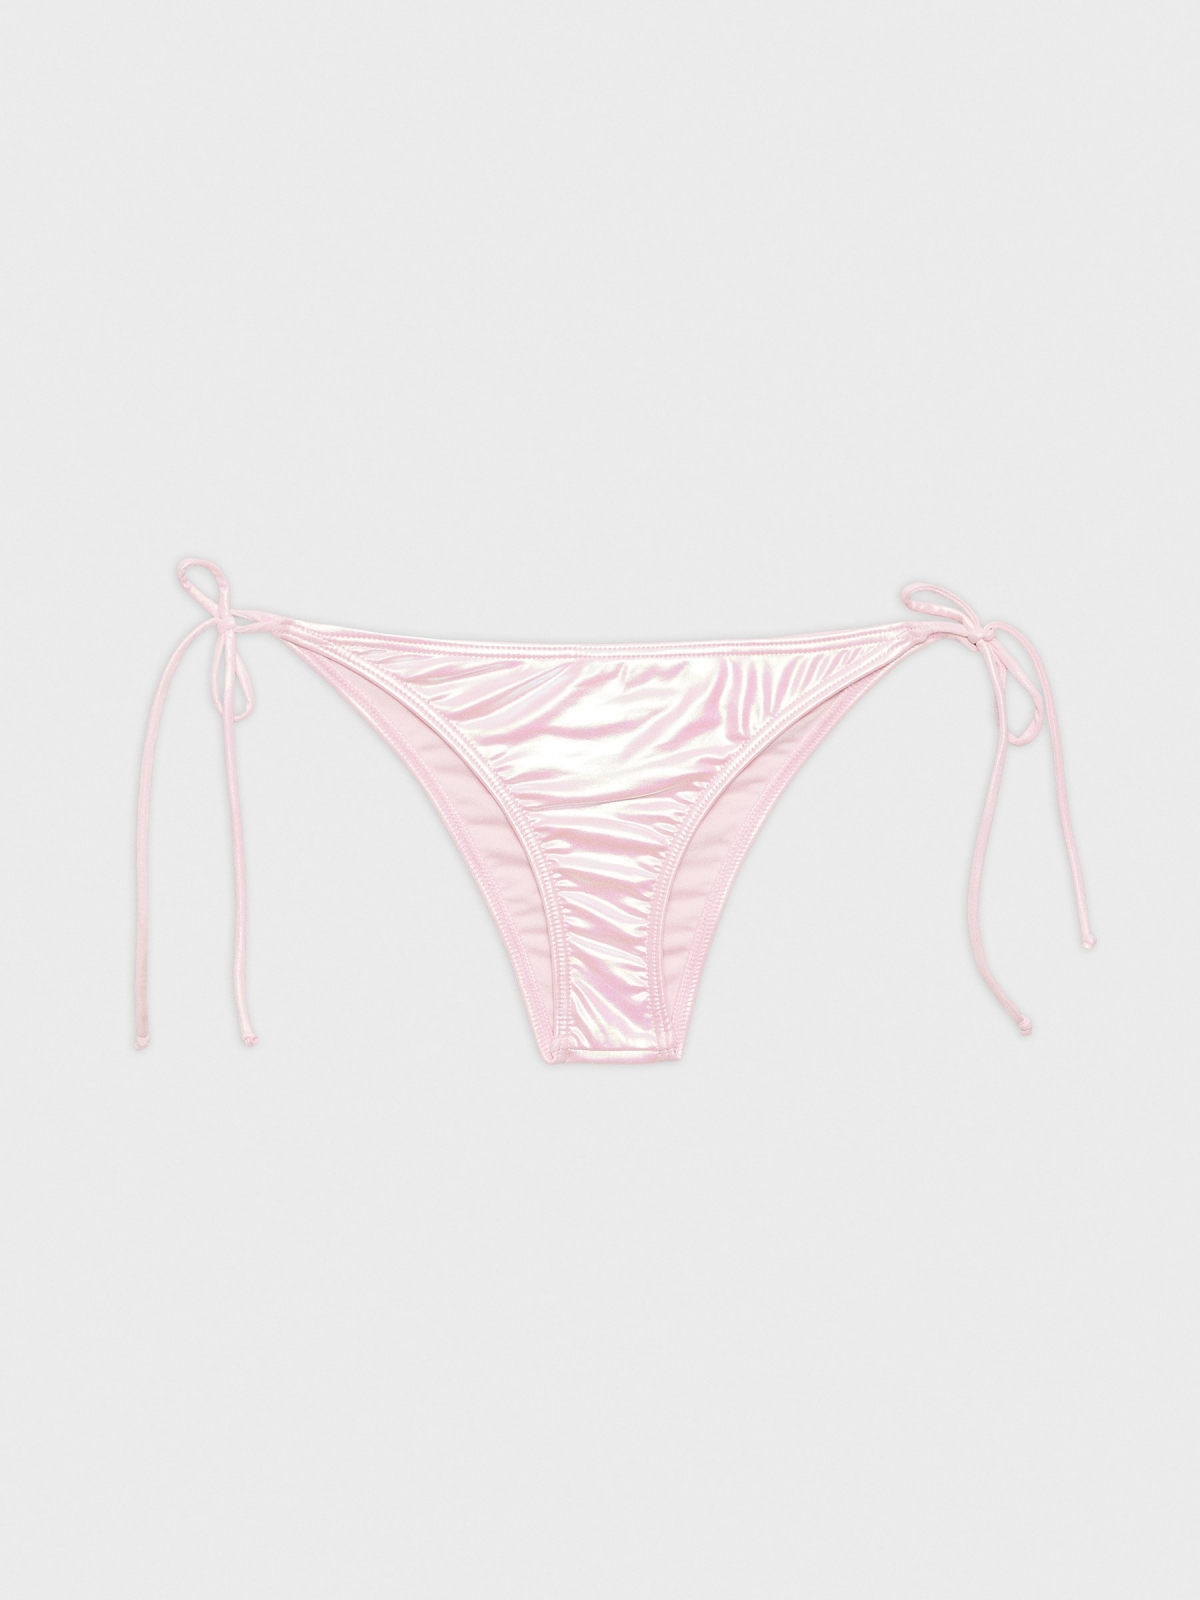  Cuencas bikini com nós rosa